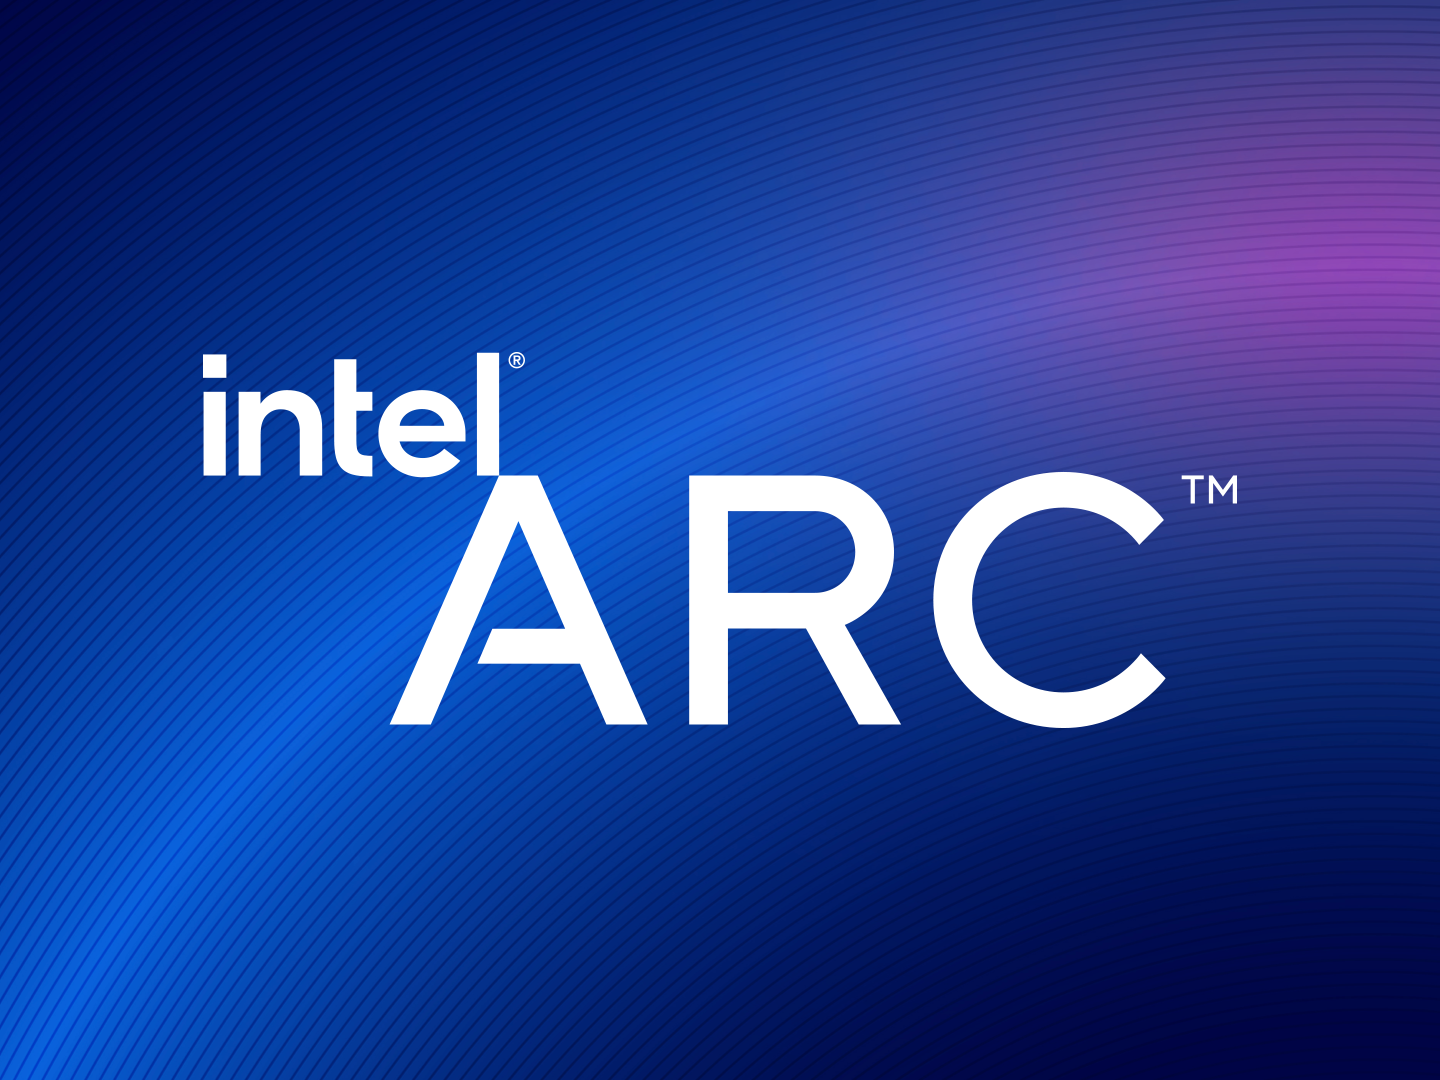 Intel arc logo